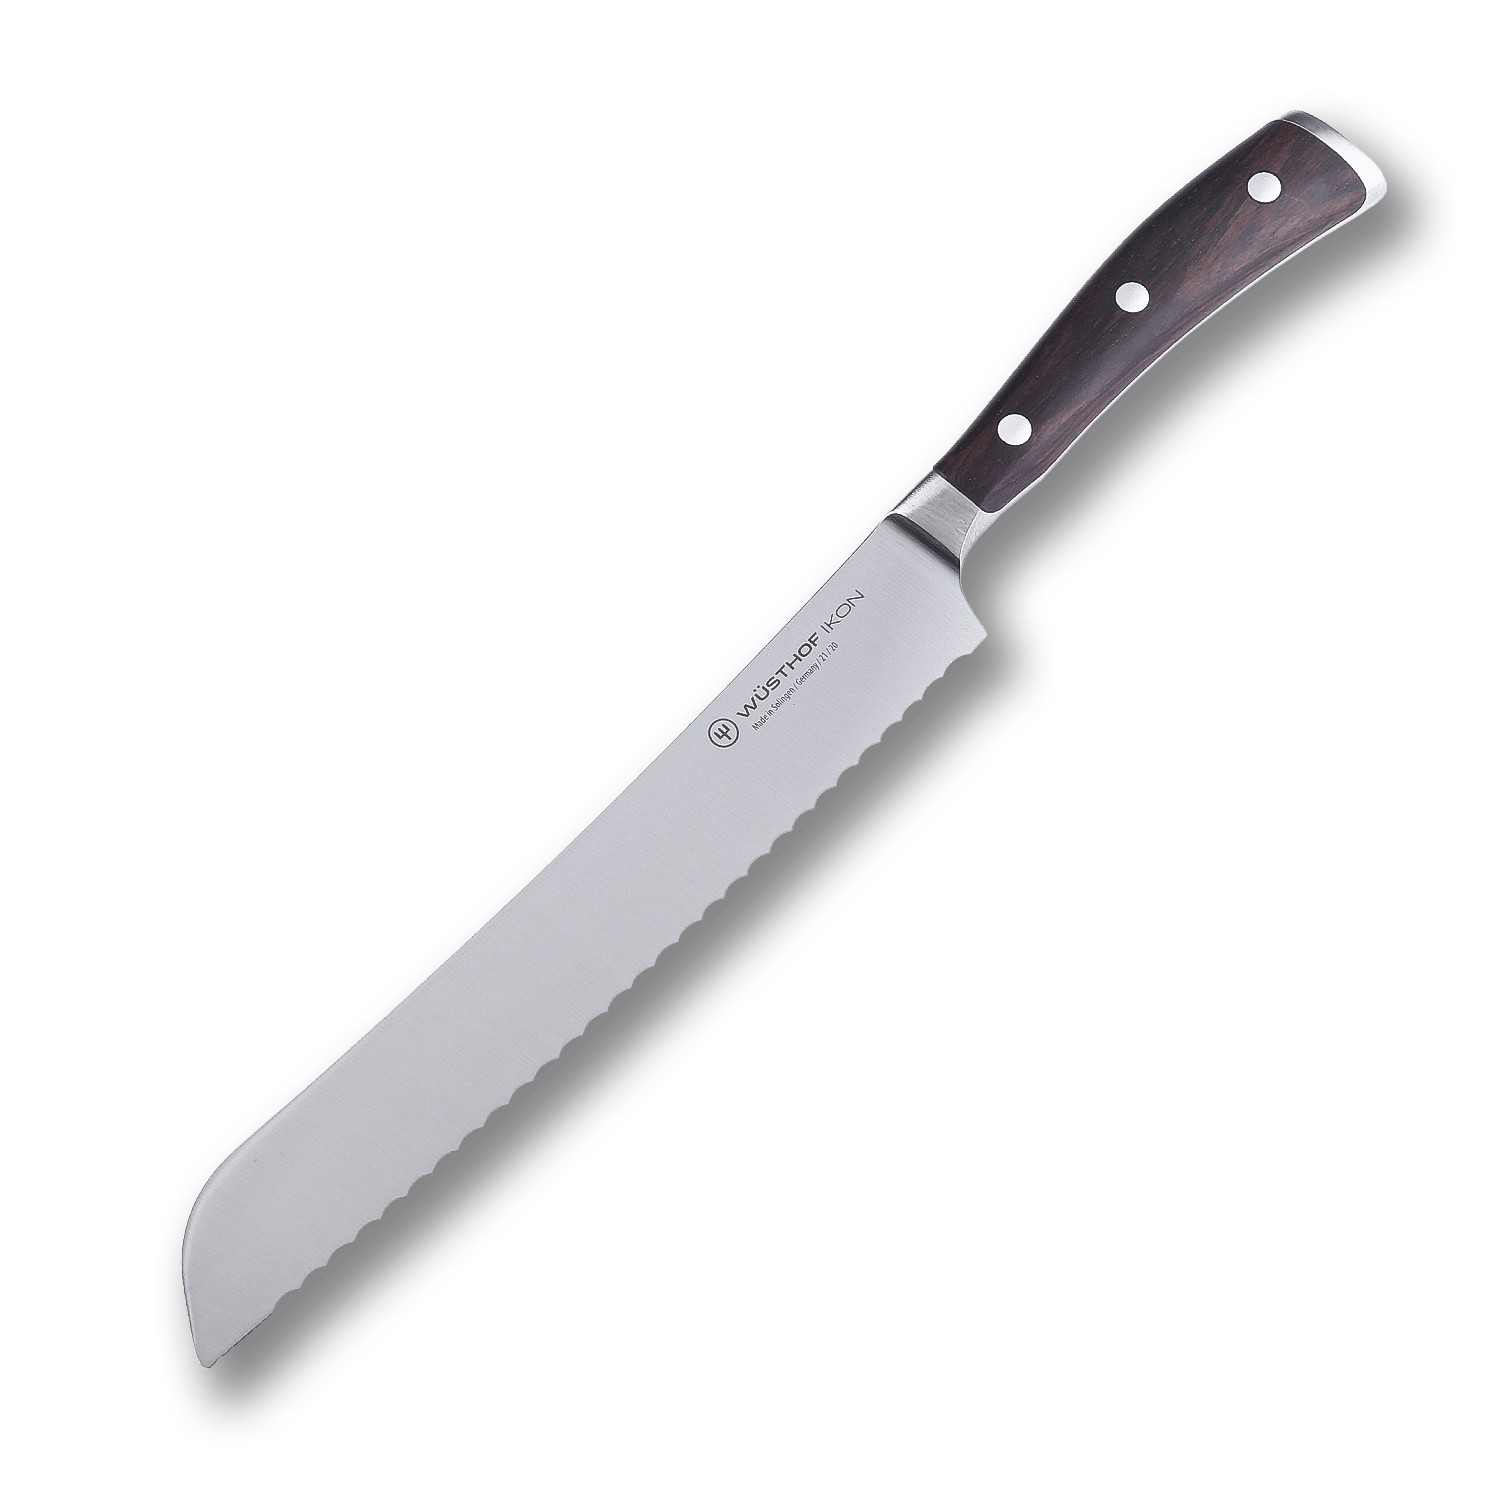 Кухонный нож для хлеба Wuesthof 20 см, кованая молибден-ванадиевая нержавеющая сталь X50CrMoV15, 1010531020